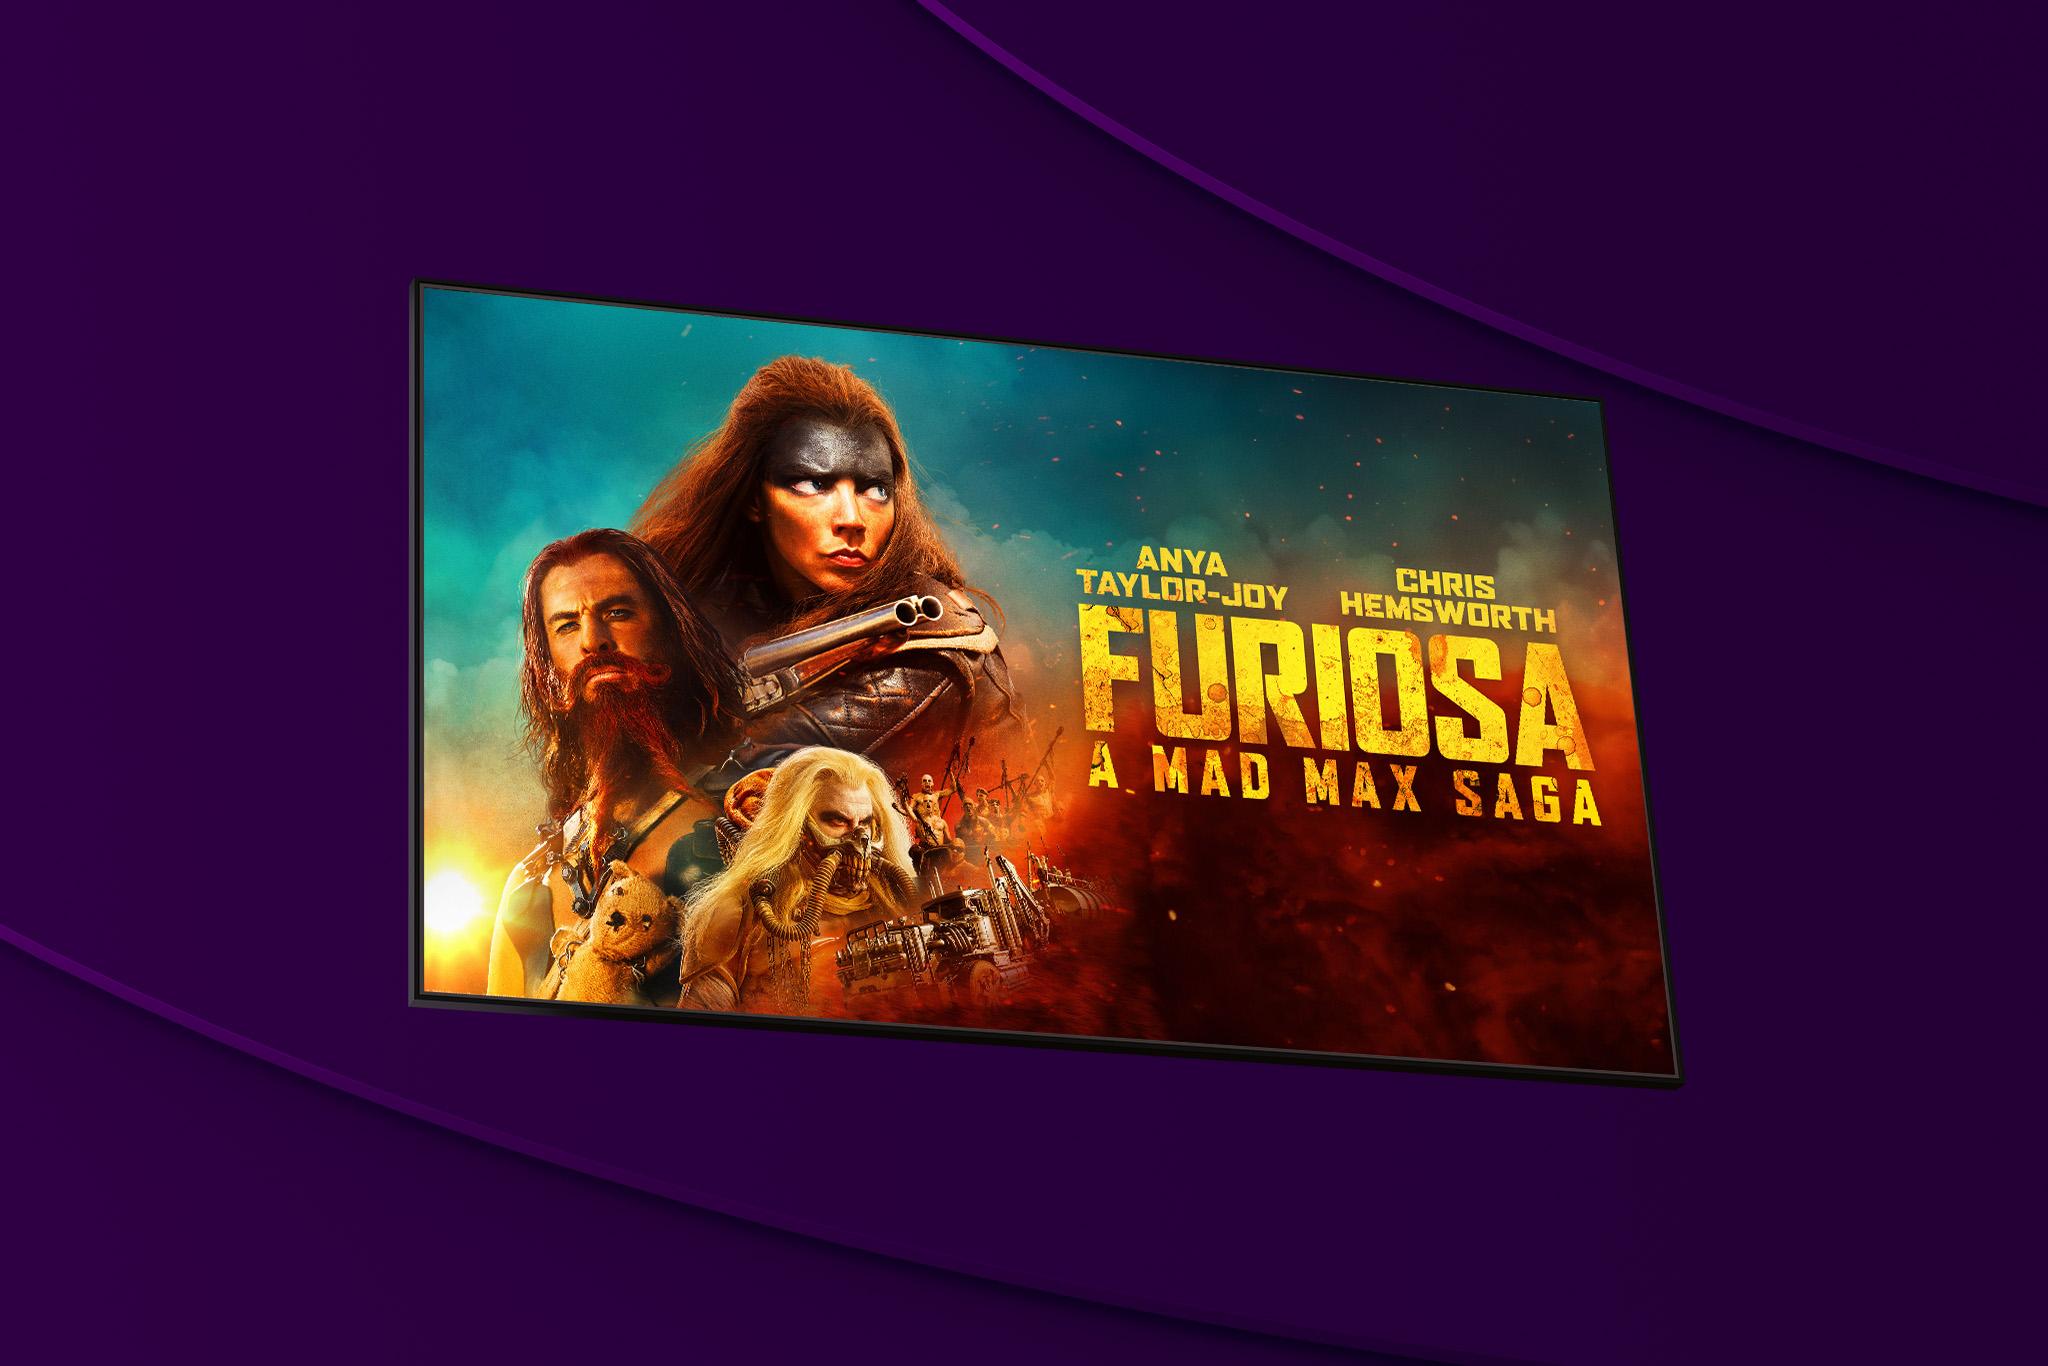 Se Furiosa: A Mad Max Saga på Filmbutiken hos Telia Play i sommar. 